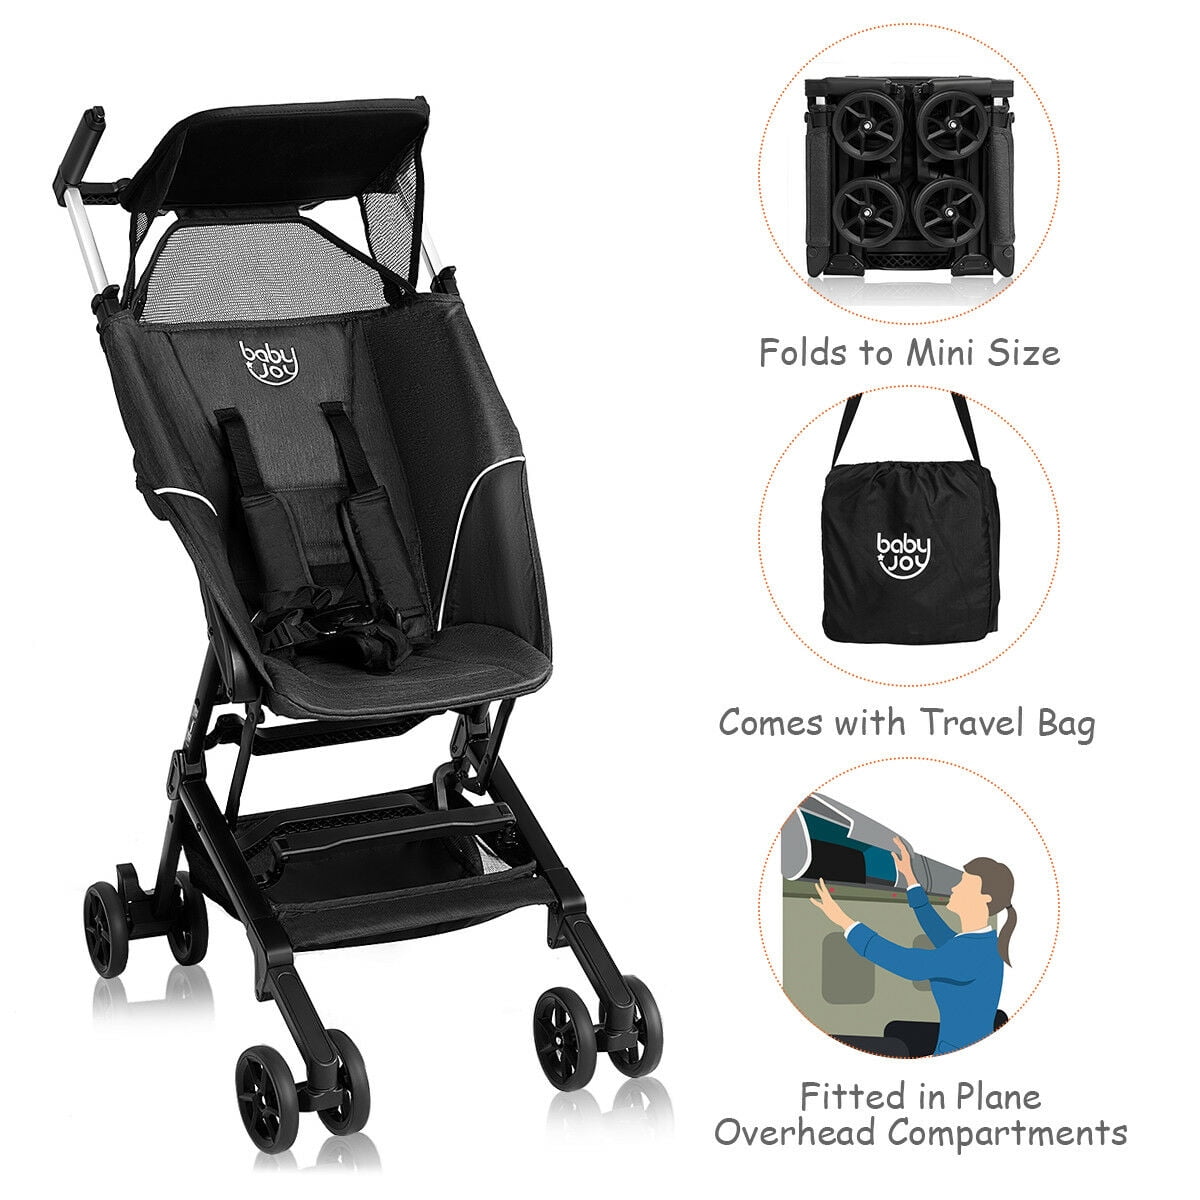 smallest folding stroller 2019